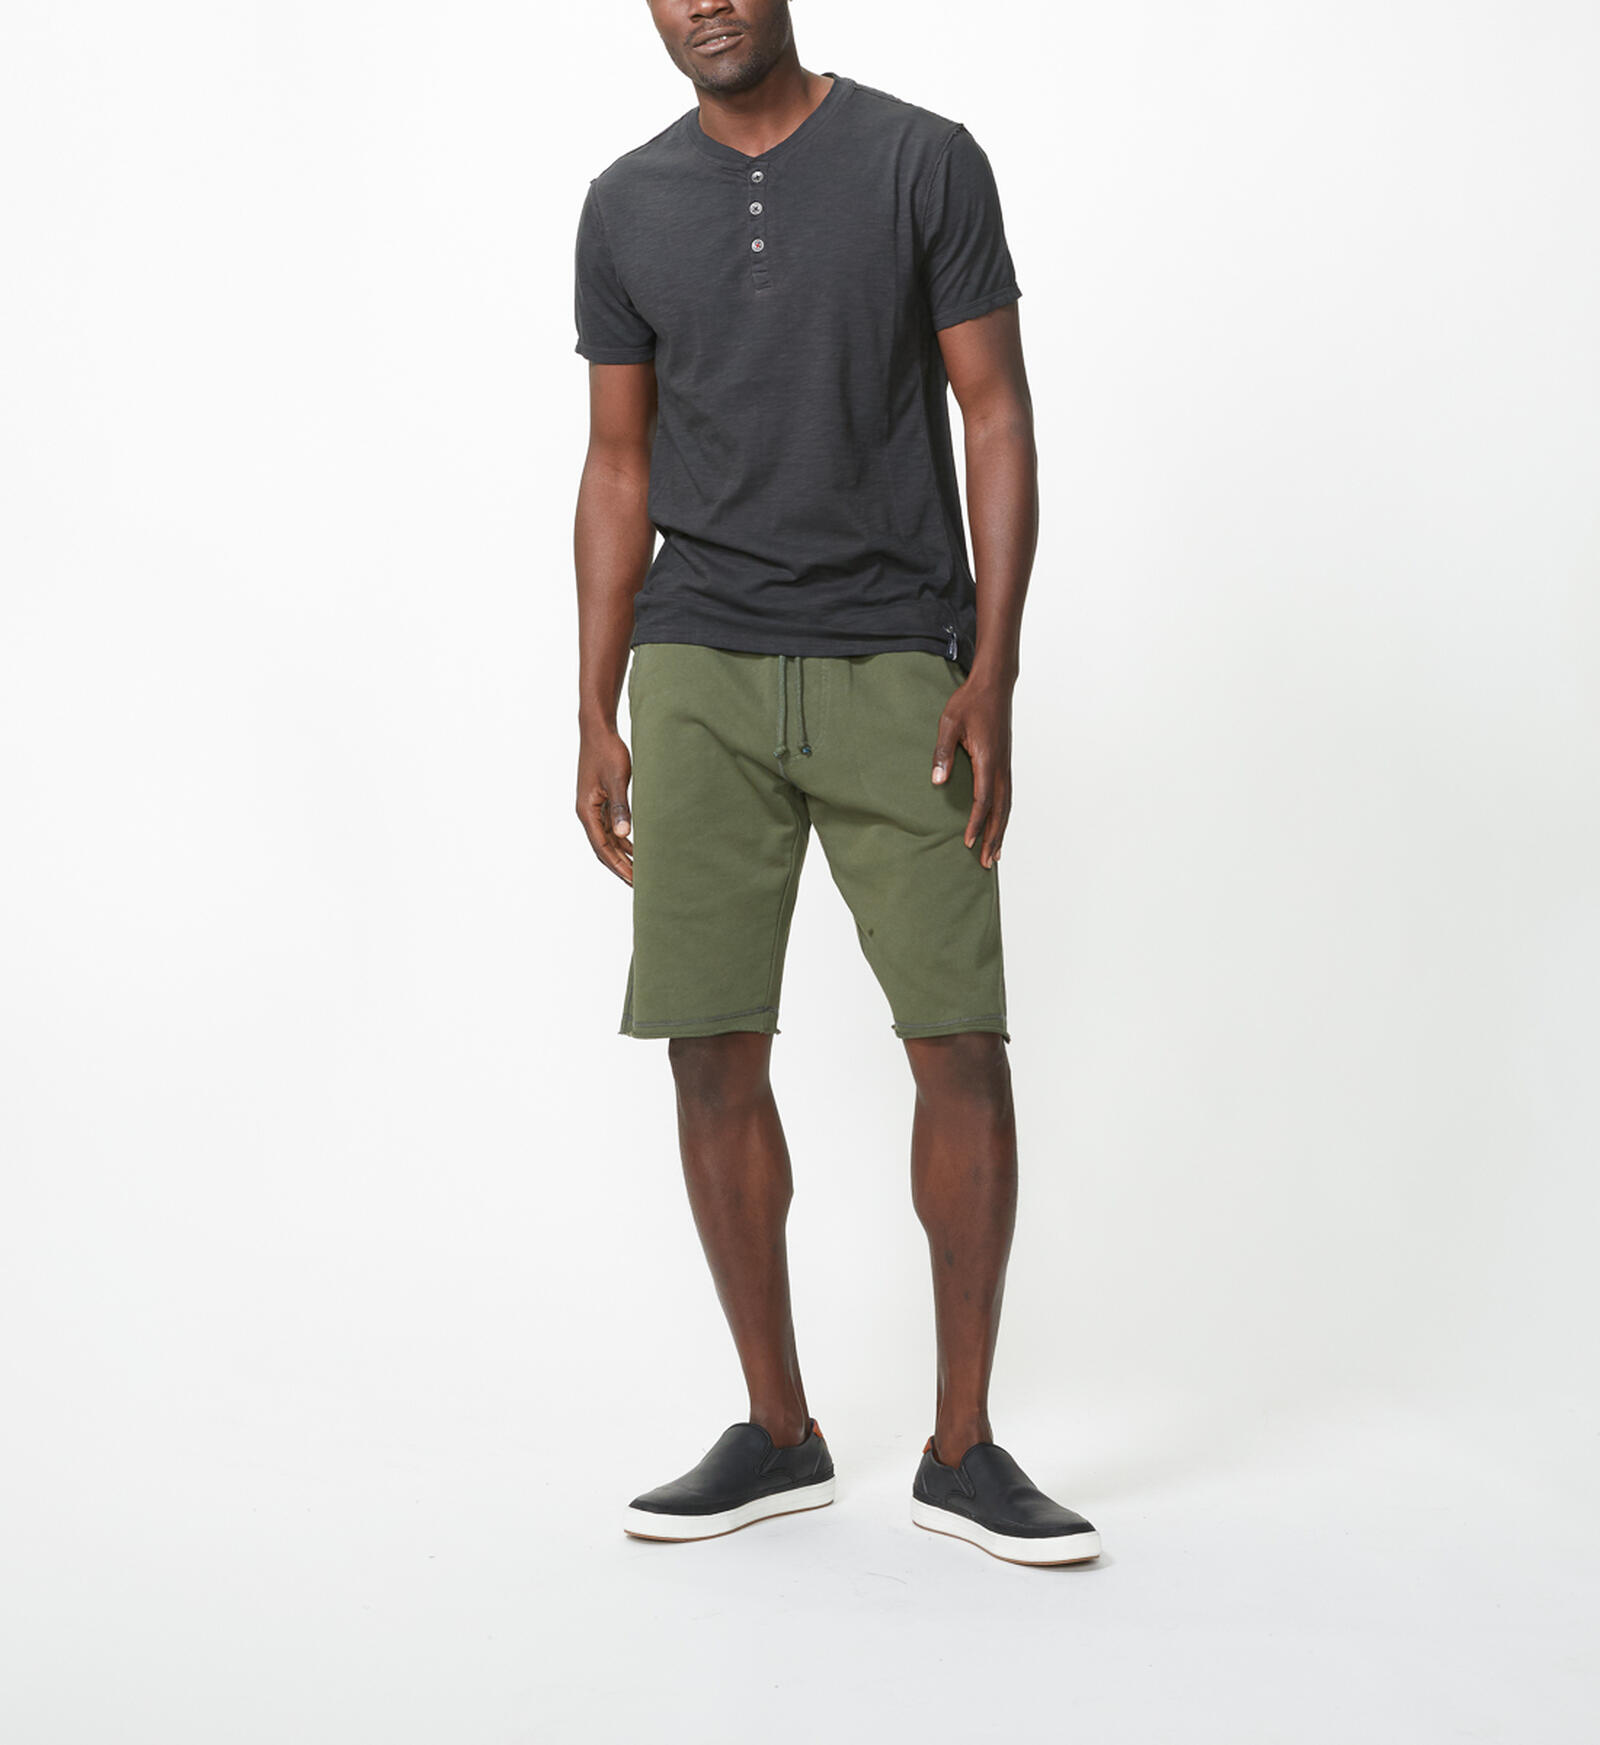 Buy Jeremy Knit Jogger Shorts for USD 48.00